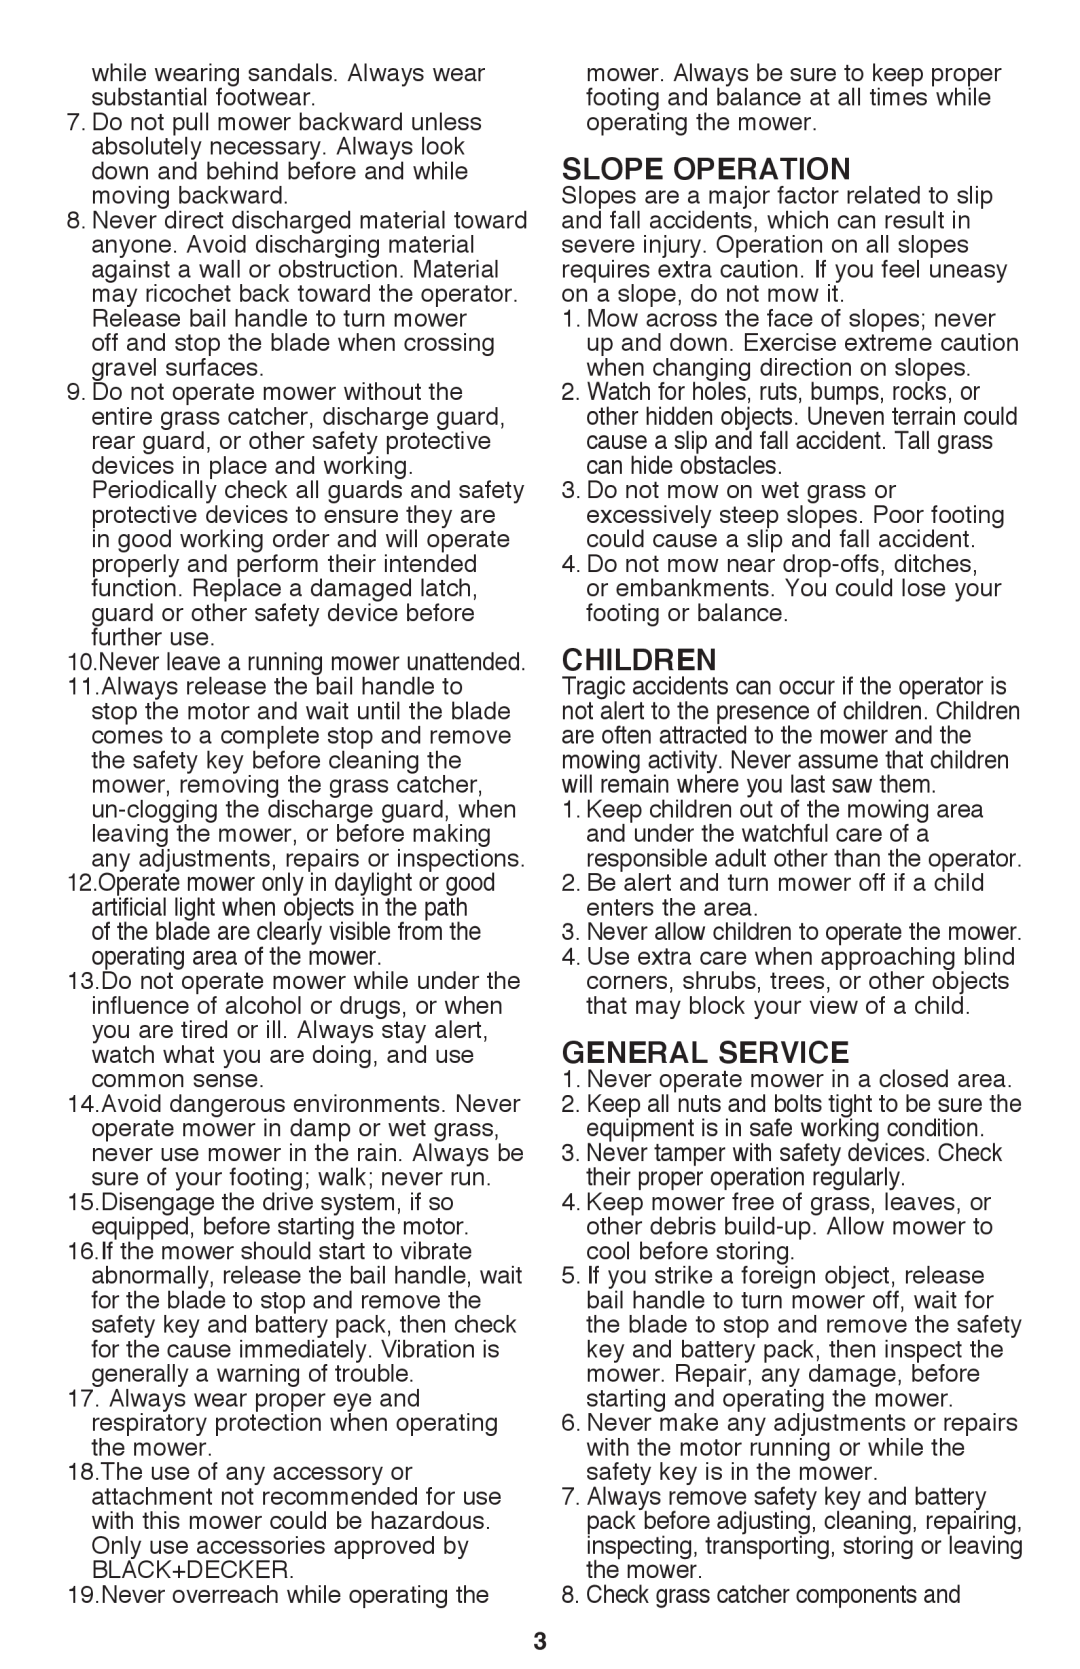 Black & Decker CM2040 instruction manual Slope Operation, Children, General Service 